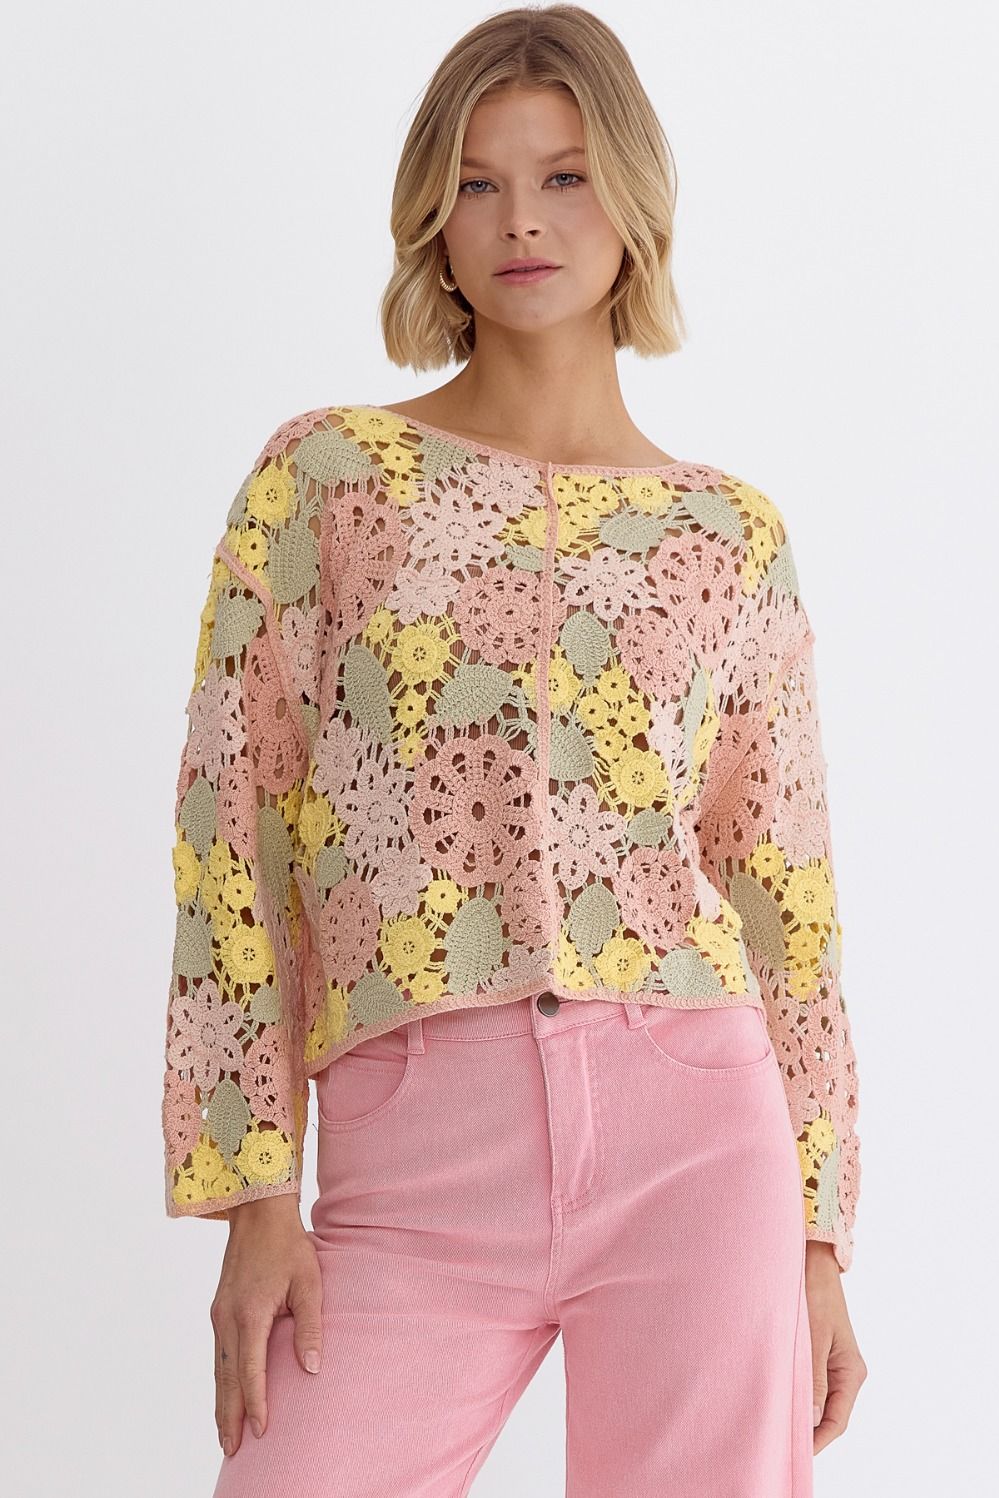 Pink Lemonade Crochet Top